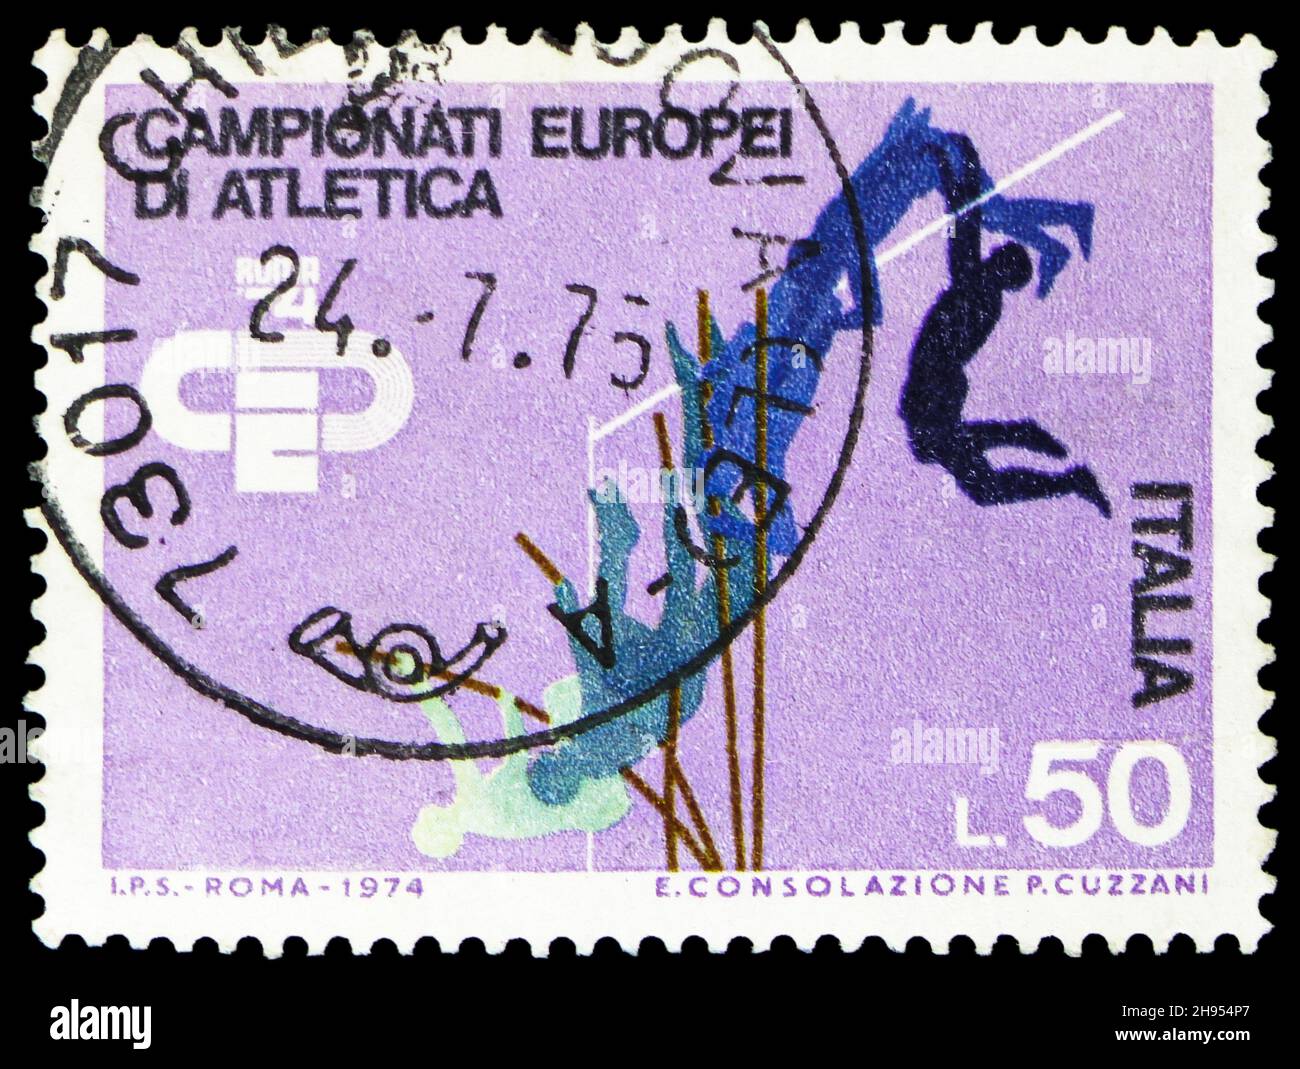 MOSKAU, RUSSLAND - 24. OKTOBER 2021: In Italien gedruckte Briefmarke zeigt Pole Vault, European Athletics Championships Serie, um 1974 Stockfoto